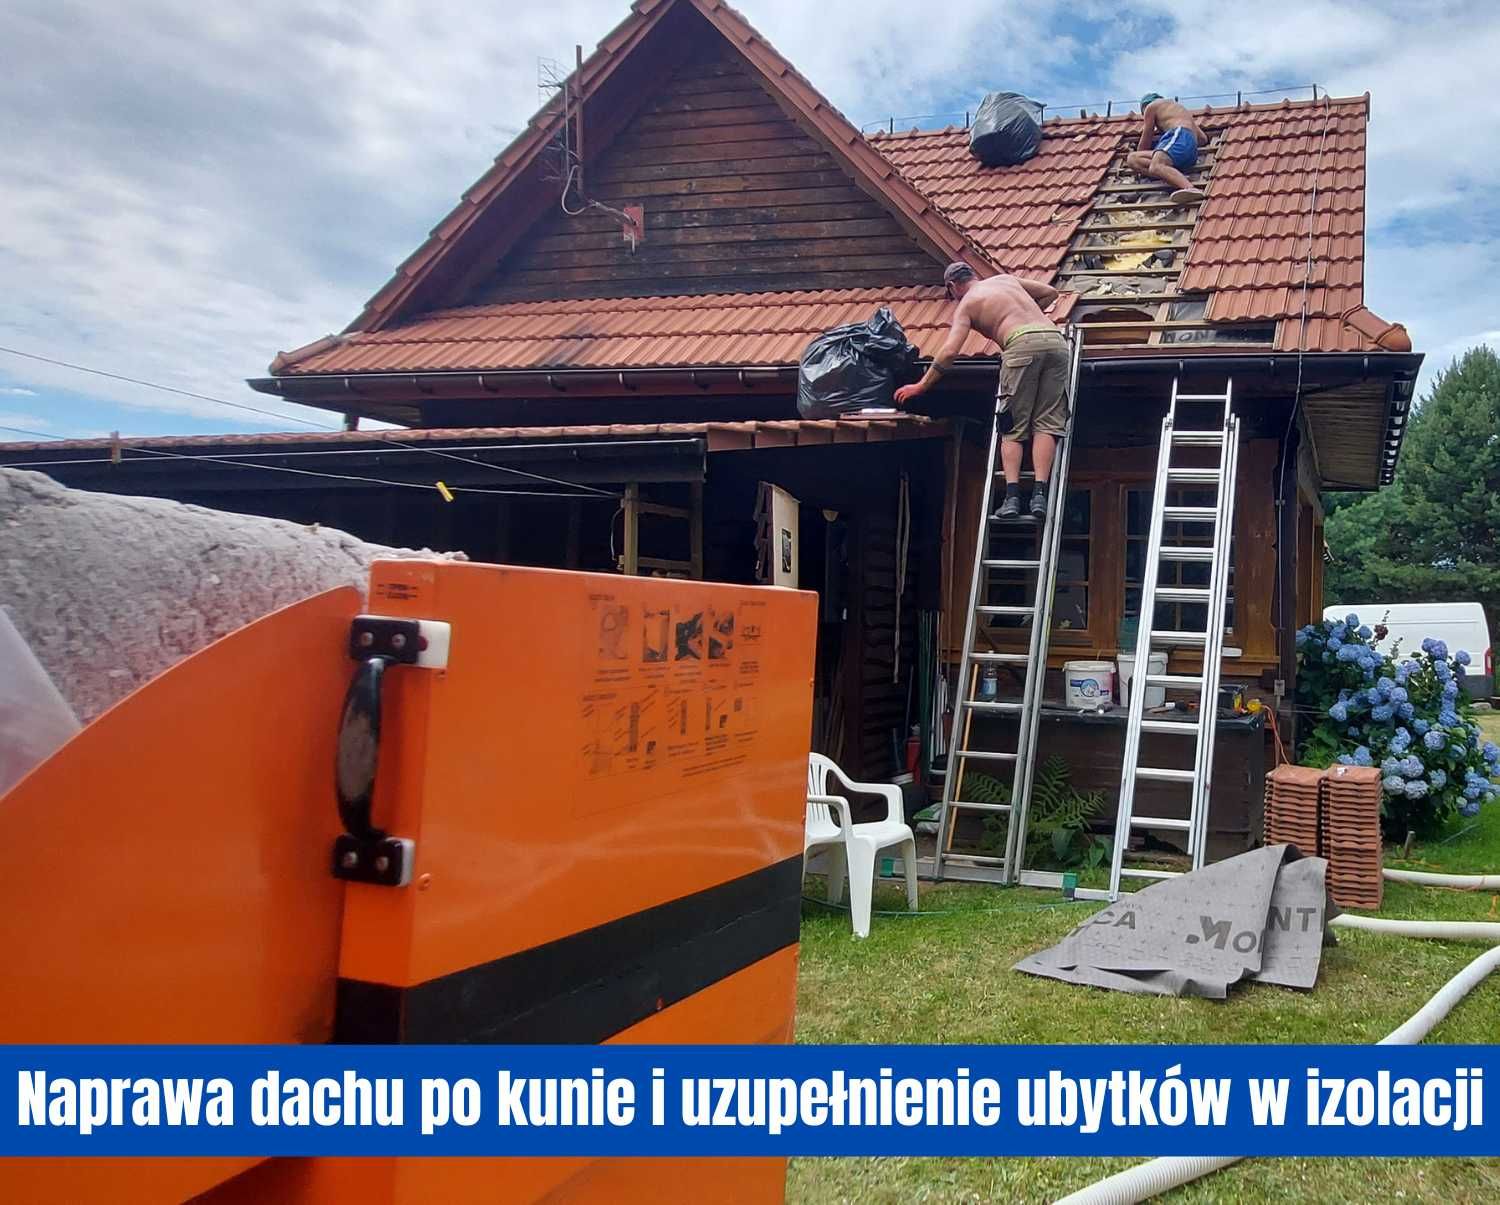 Zwalczanie kuny pastuch na domu i naprawa szkód w dachu Białystok